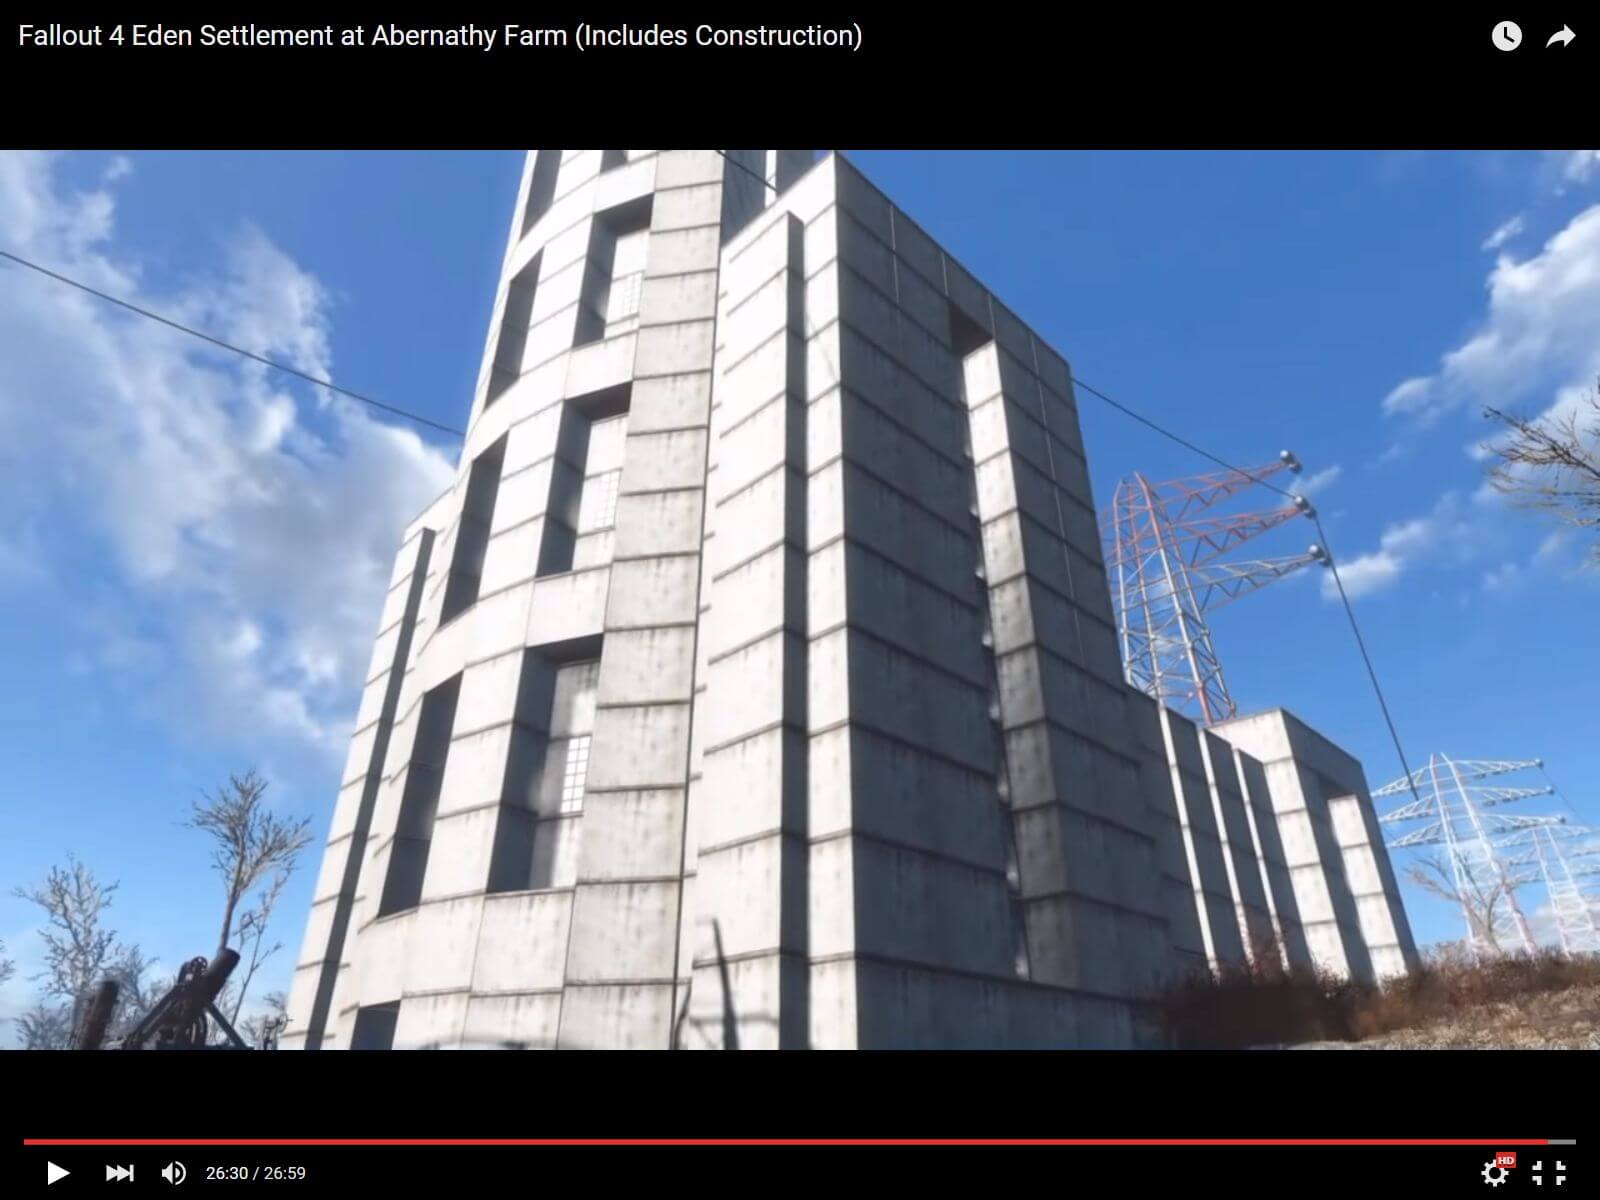 Fallout4 バニラで現代風タワーを建築 アバナシー ファームの劇的ビフォーアフターが凄い 動画あり ねこくまぶろぐ